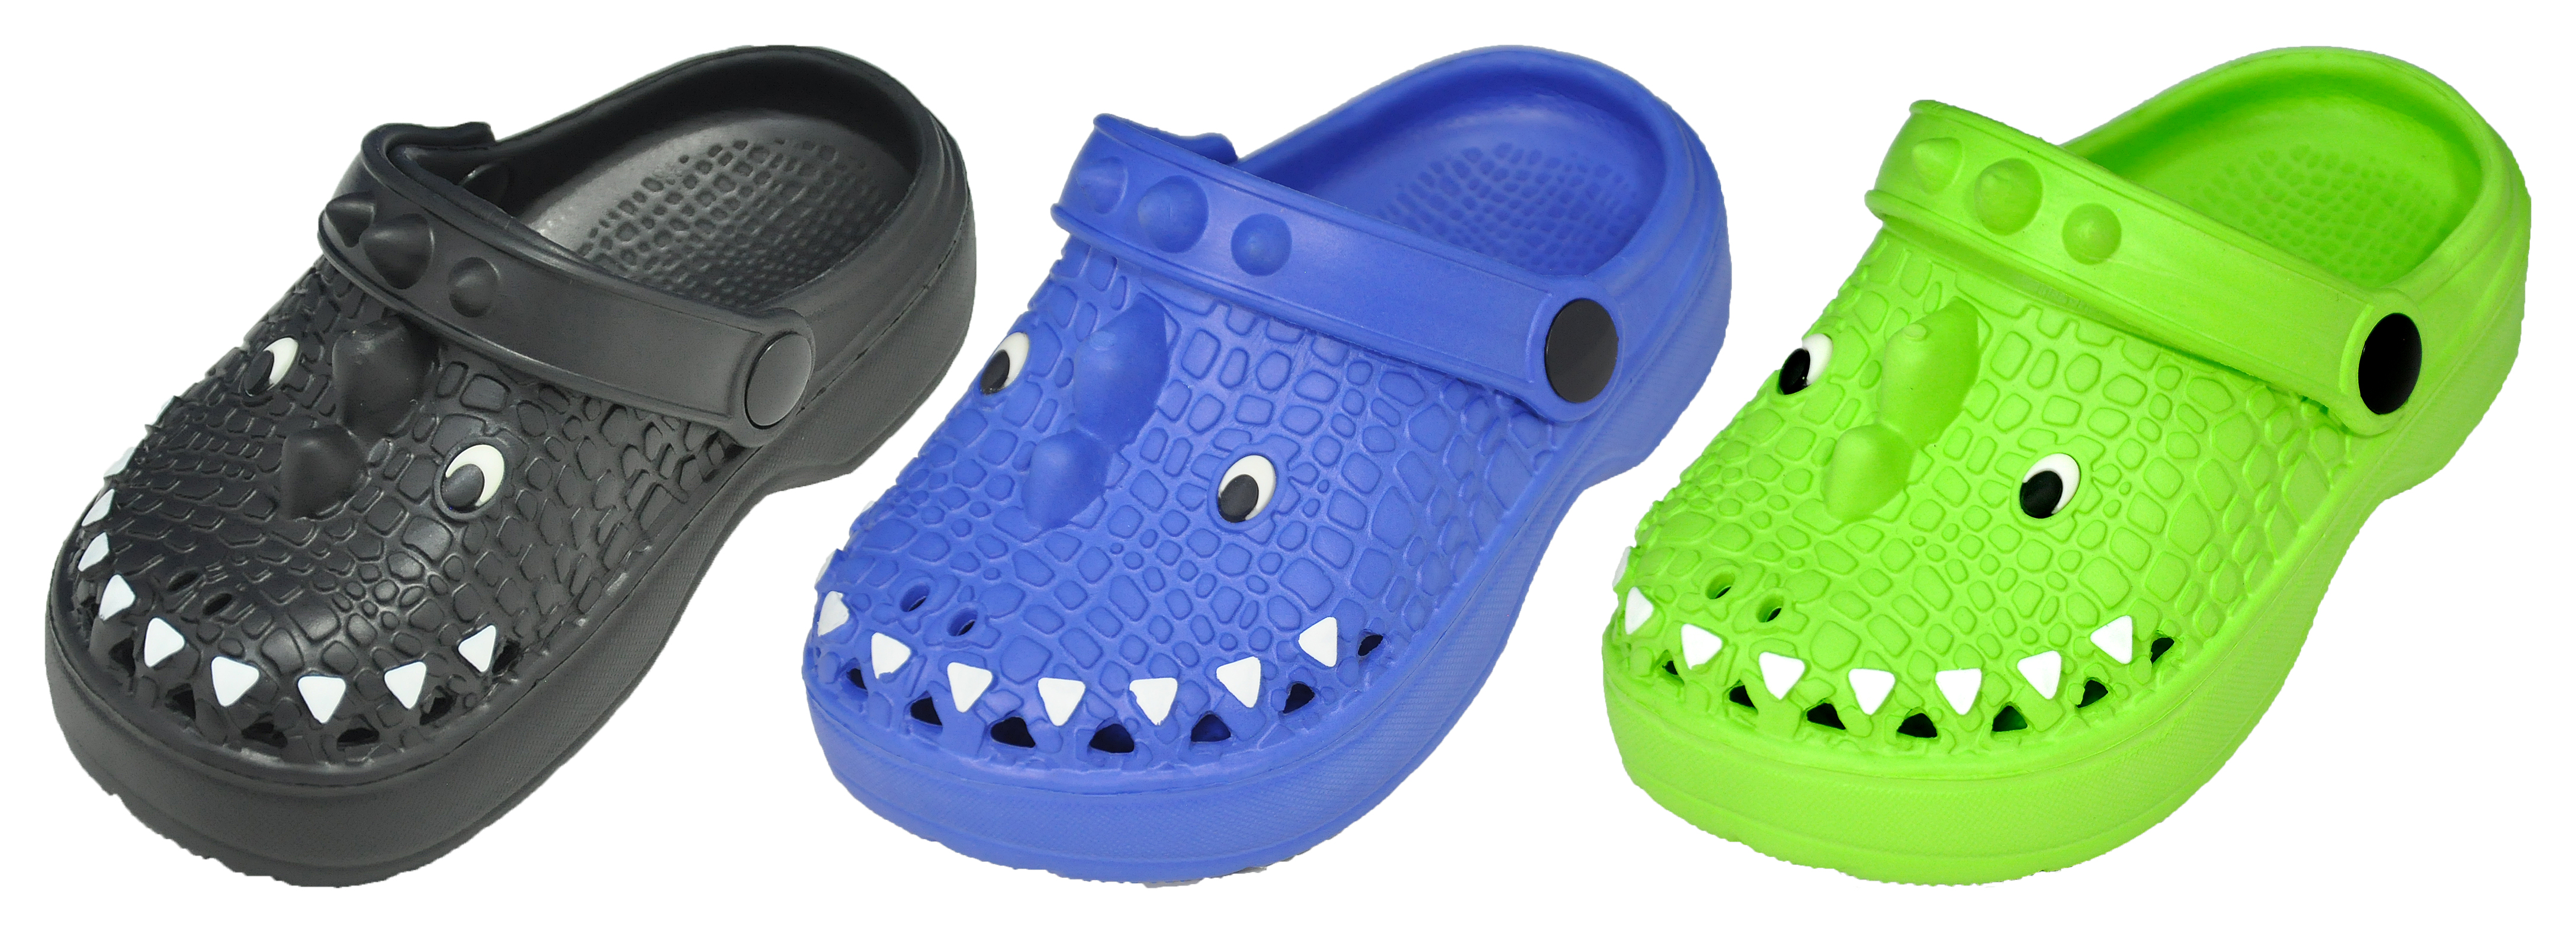 Toddler's Alligator Skin CLOGS w/ Adjustable Heel Strap & Soft Footbed